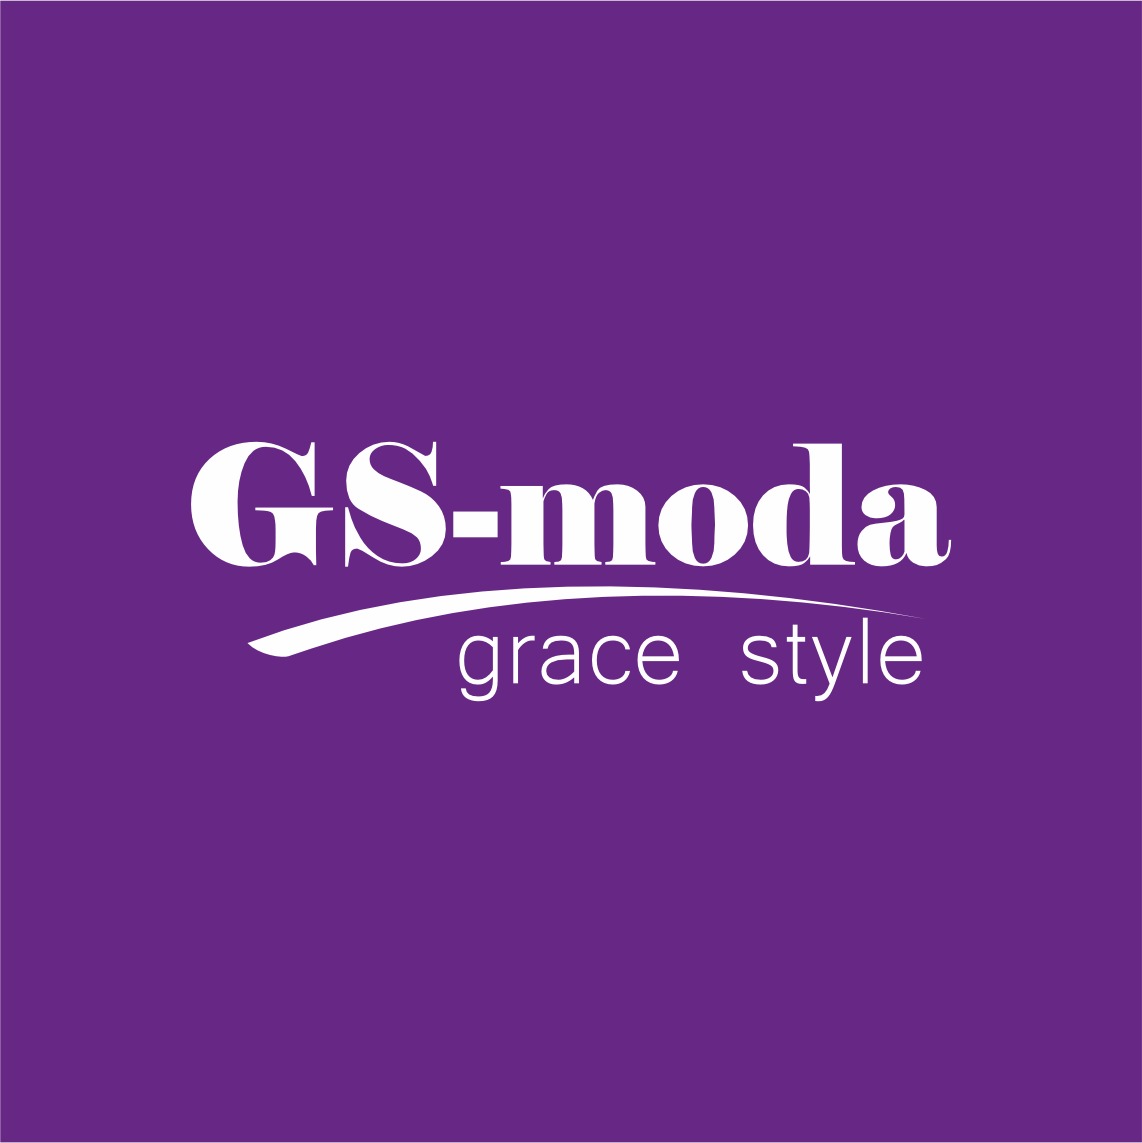 GS-moda